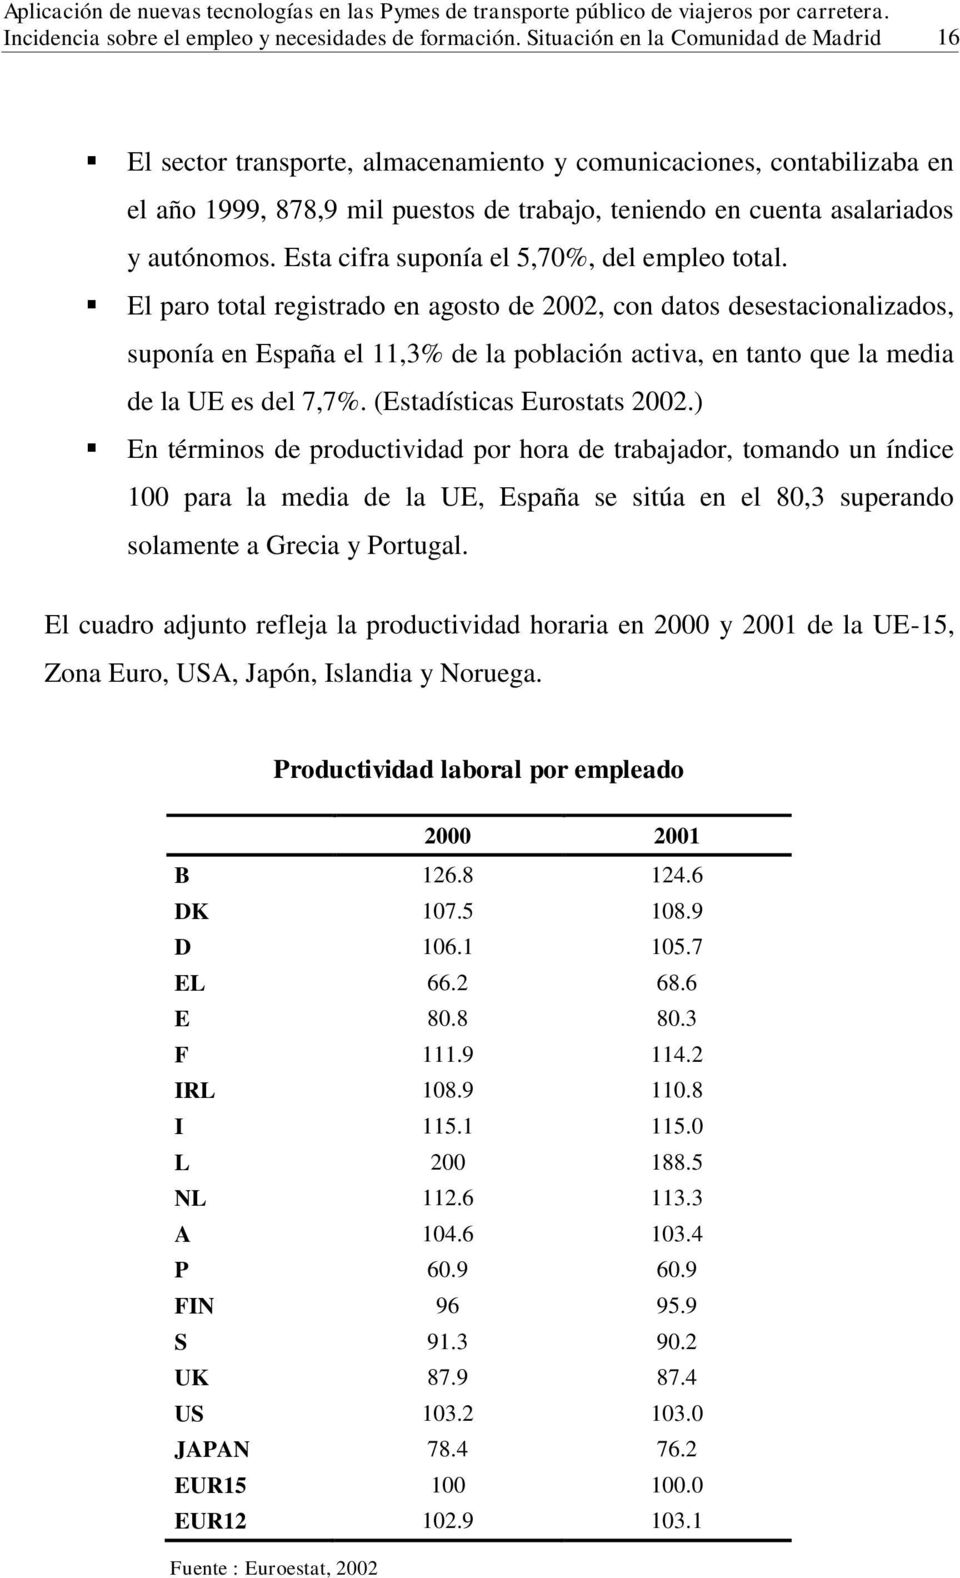 El paro total registrado en agosto de 2002, con datos desestacionalizados, suponía en España el 11,3% de la población activa, en tanto que la media de la UE es del 7,7%. (Estadísticas Eurostats 2002.